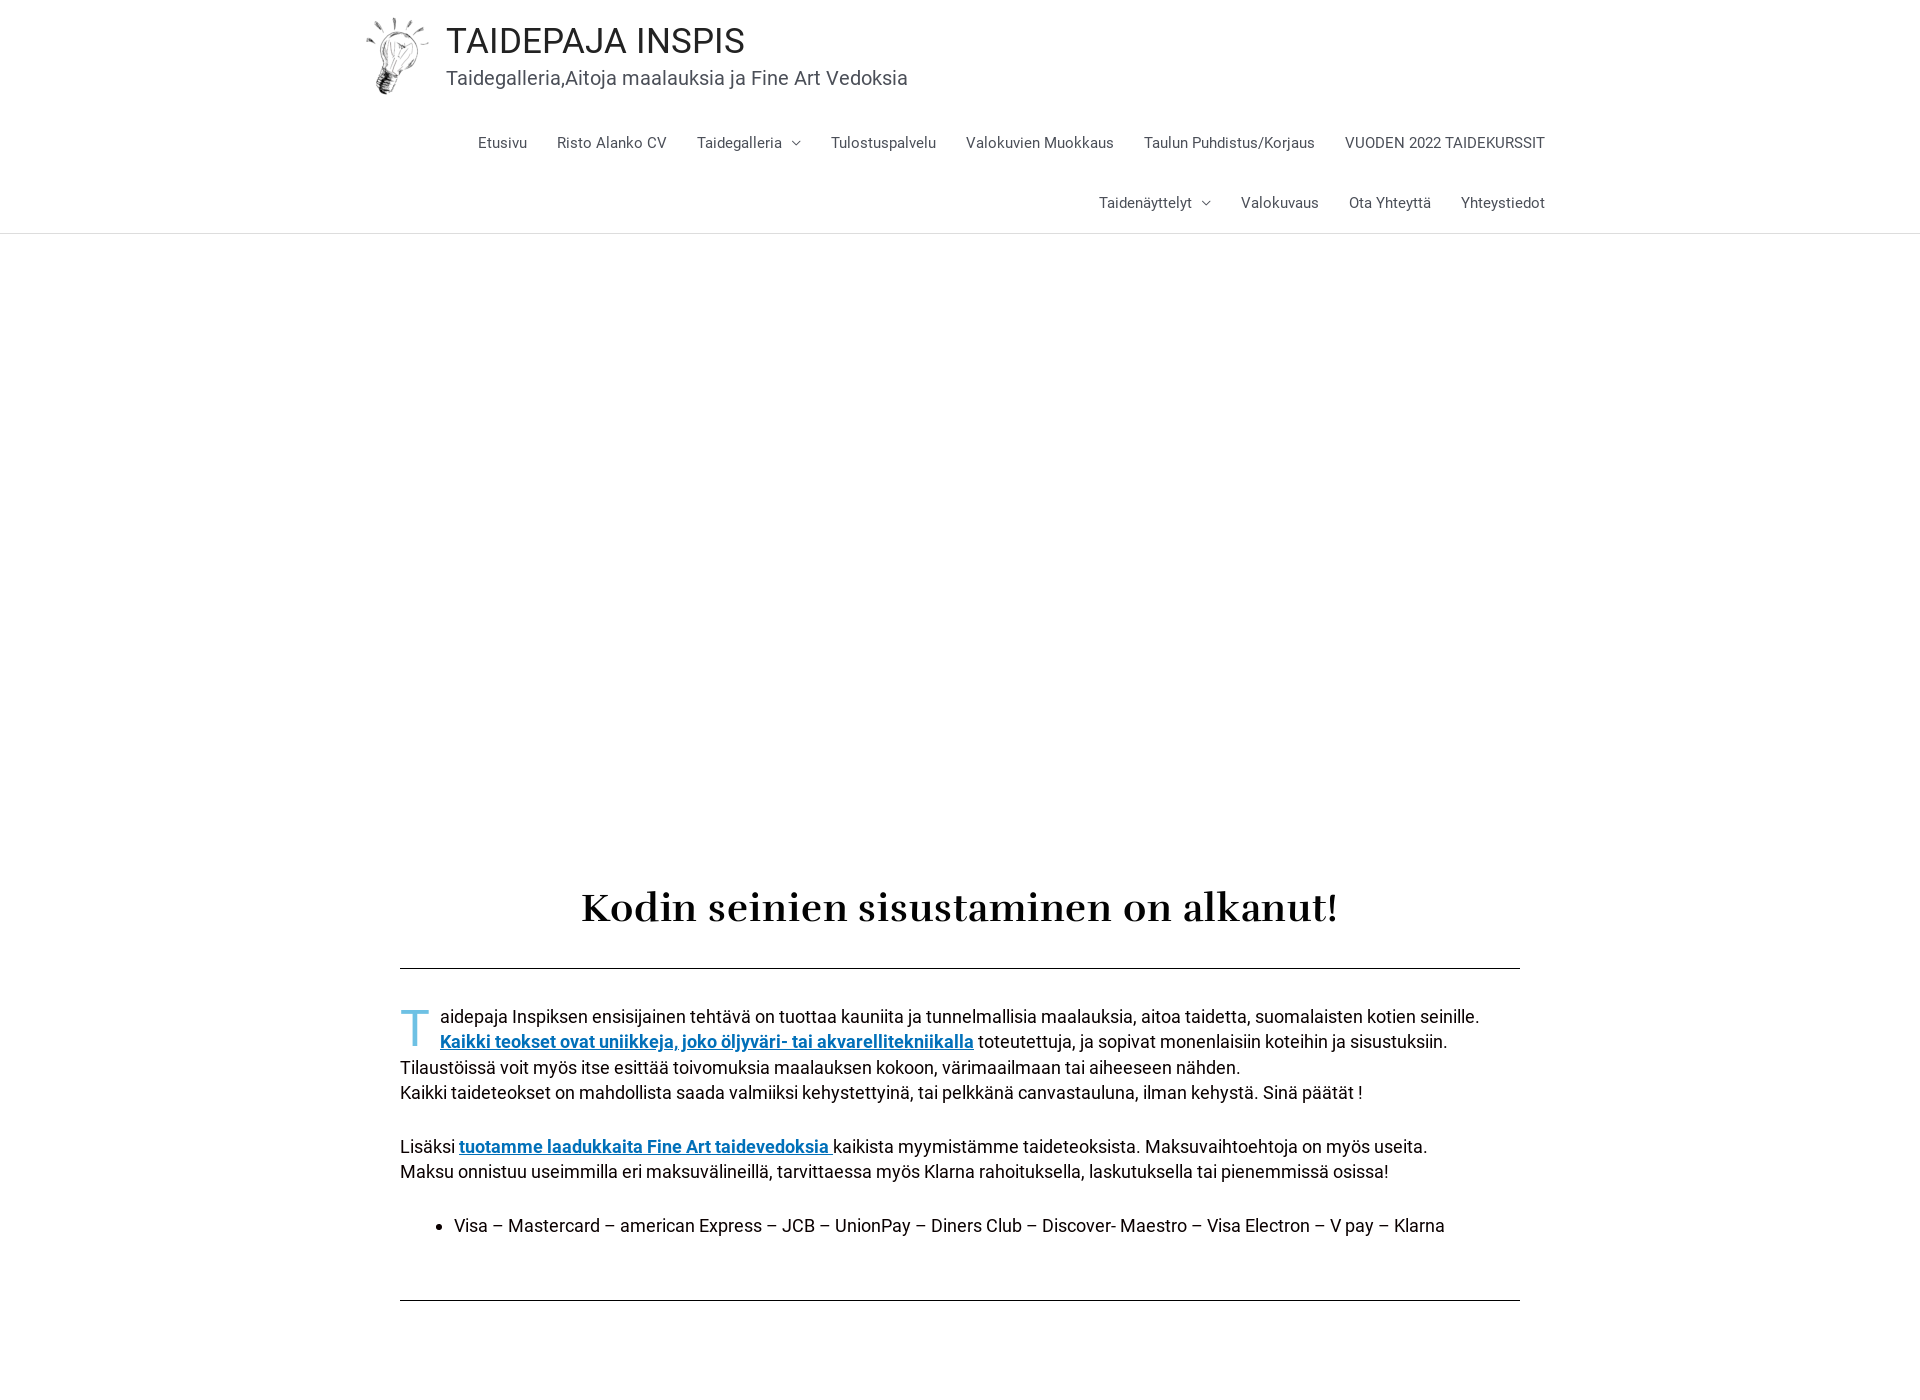 Skärmdump för ristoalanko.fi